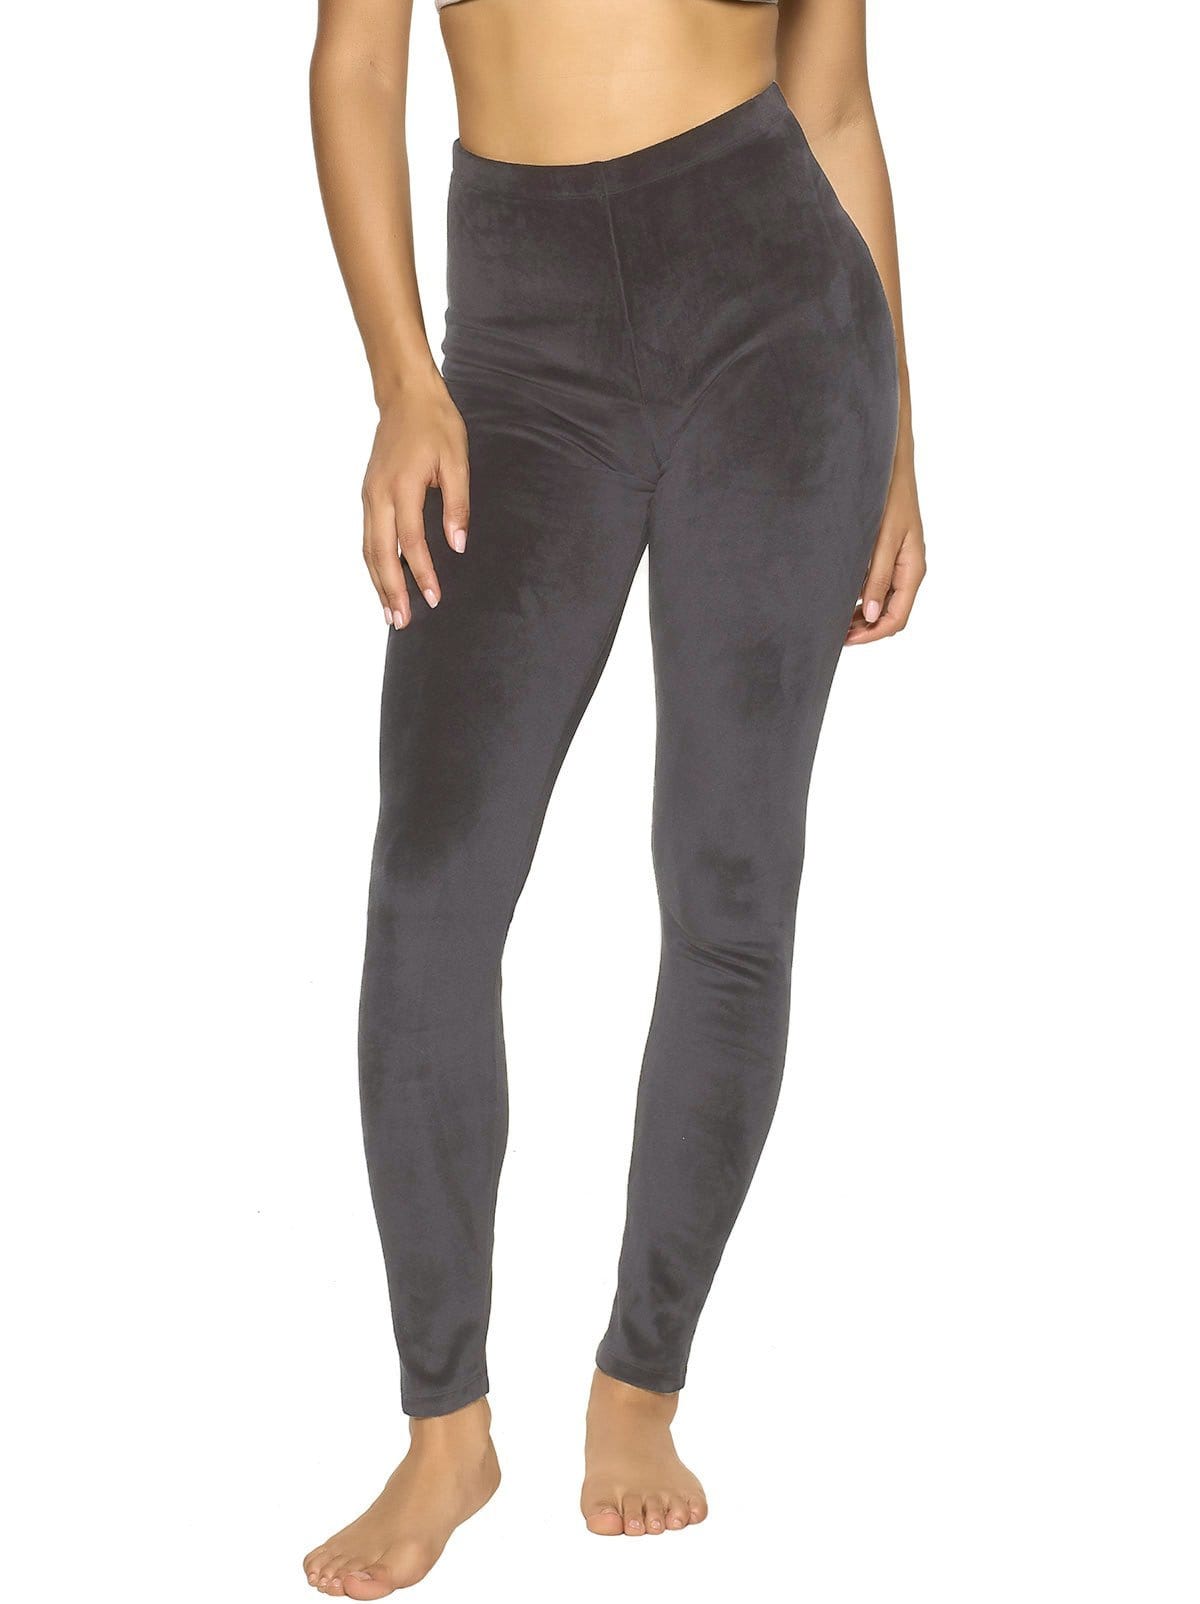 Felina Velvety Super Soft Lightweight Leggings For Women - Yoga Pants -  (2-Pack) (Black, X-Large) 